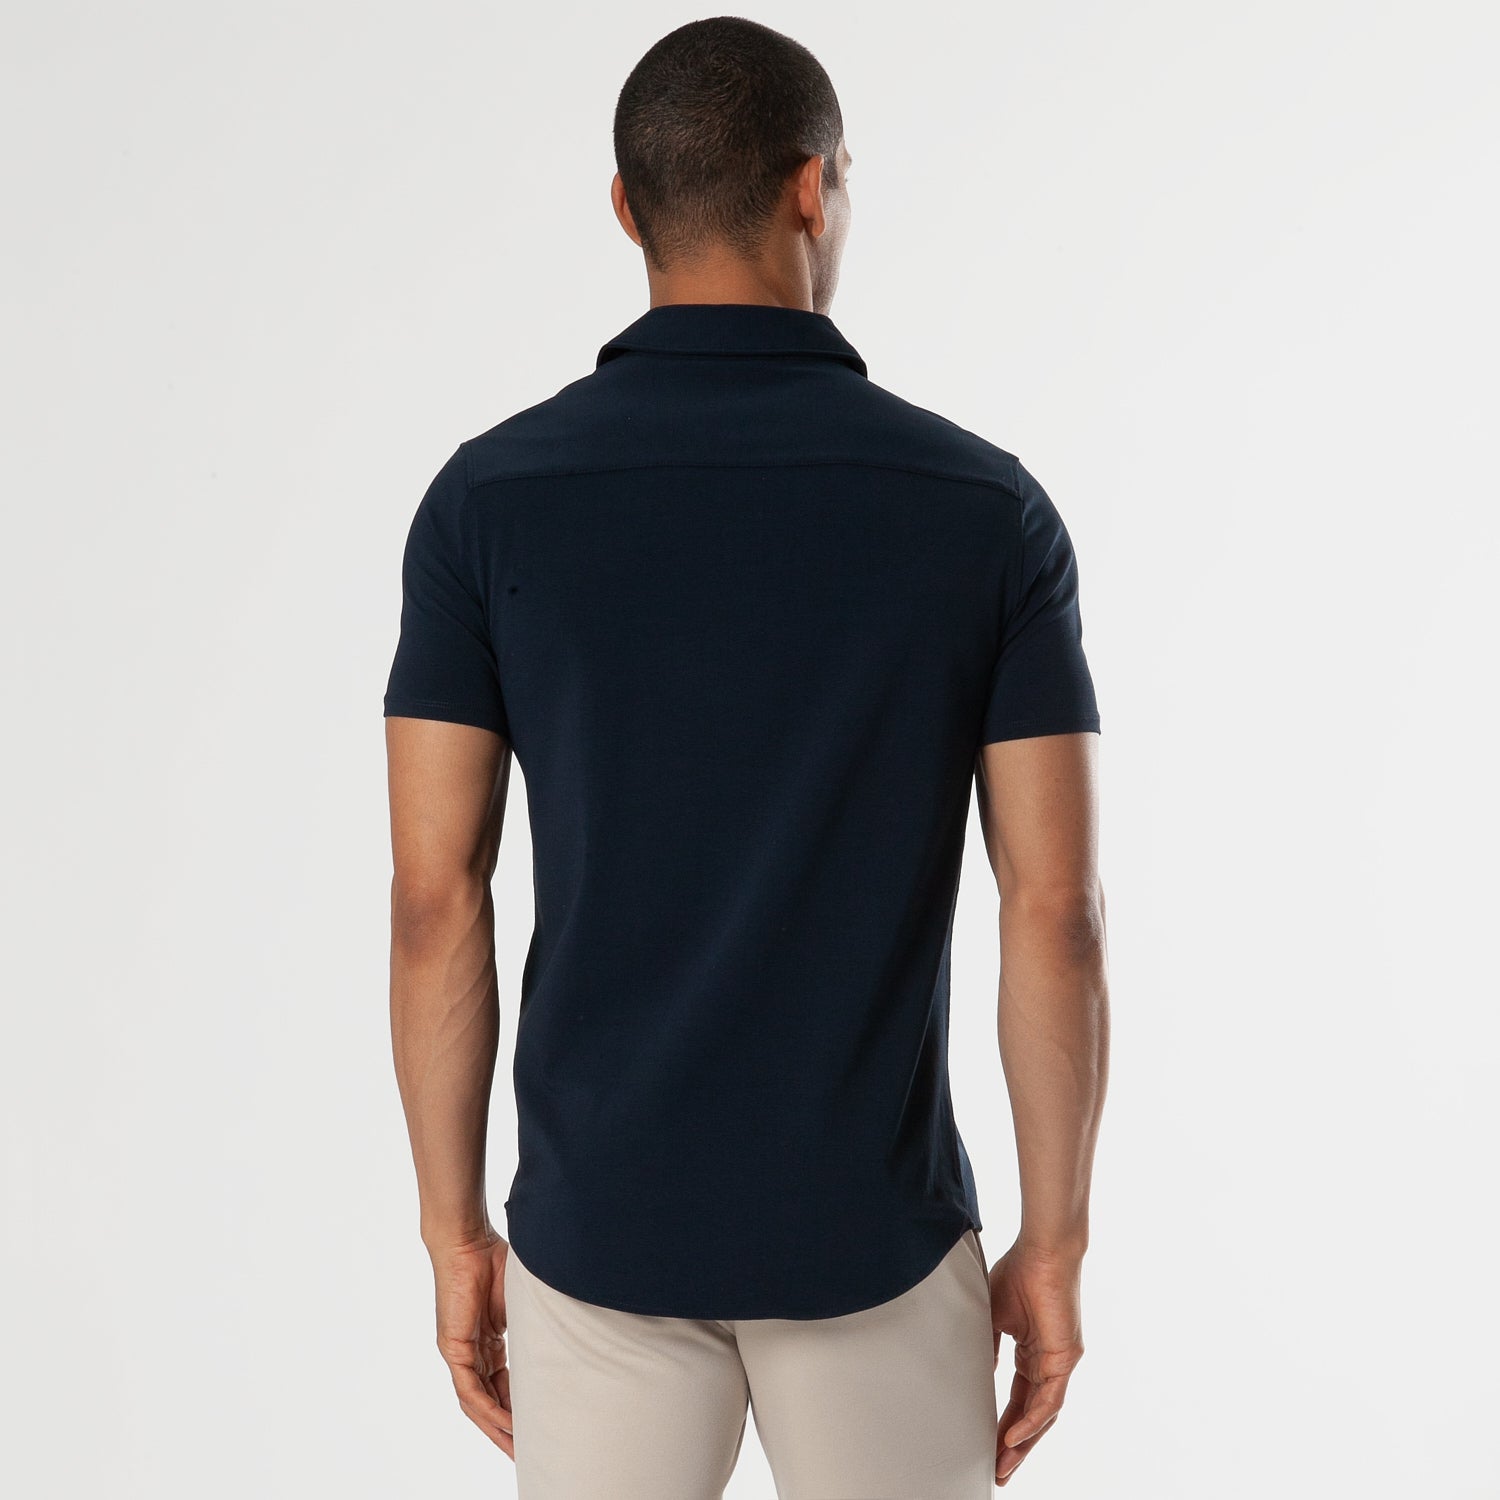 Navy Short Sleeve Knit Button Up Shirt